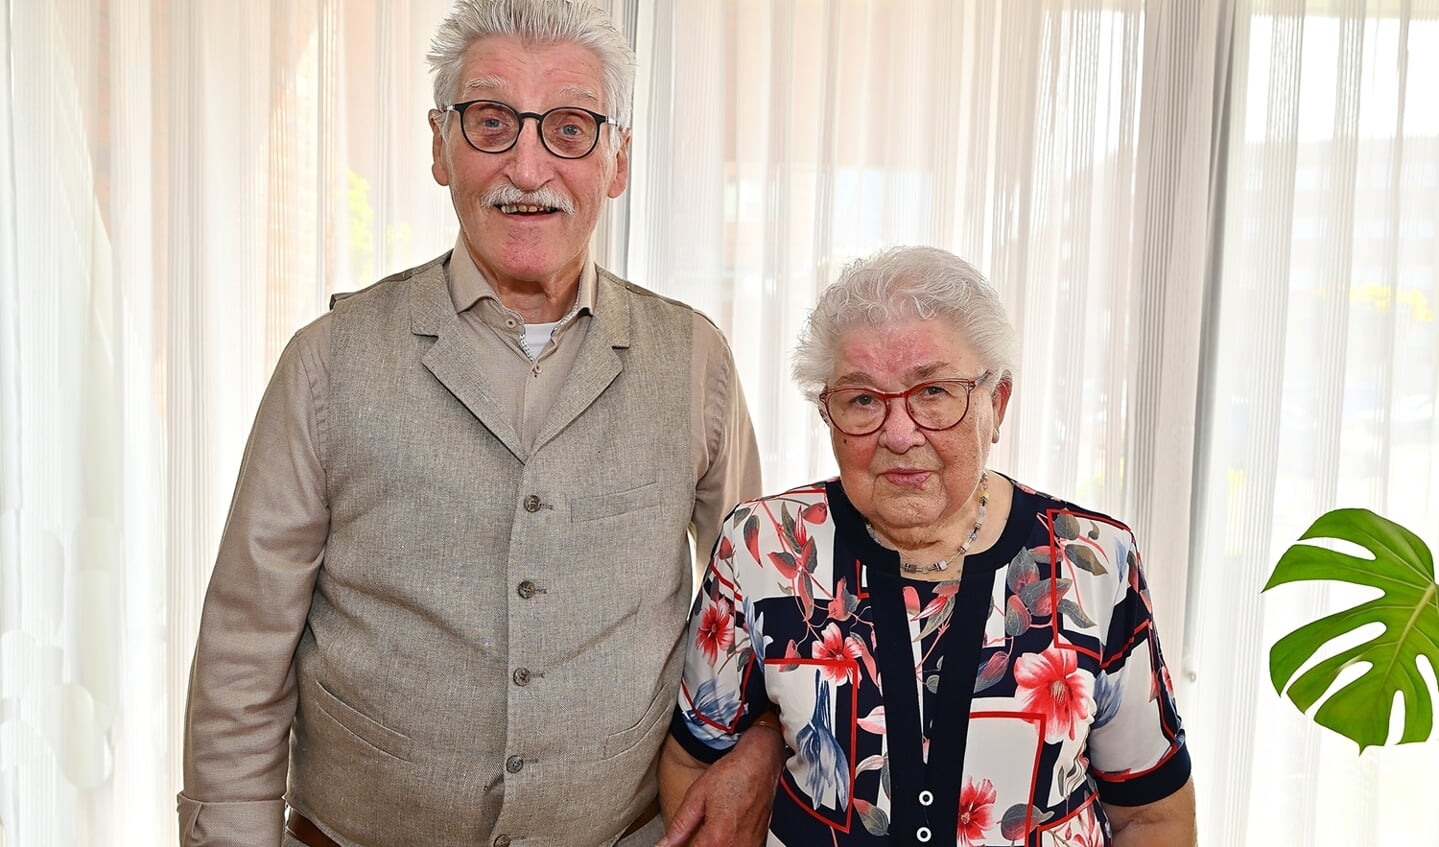 • Het echtpaar Sietsma-De Boer was op zaterdag 16 april 65 jaar getrouwd.